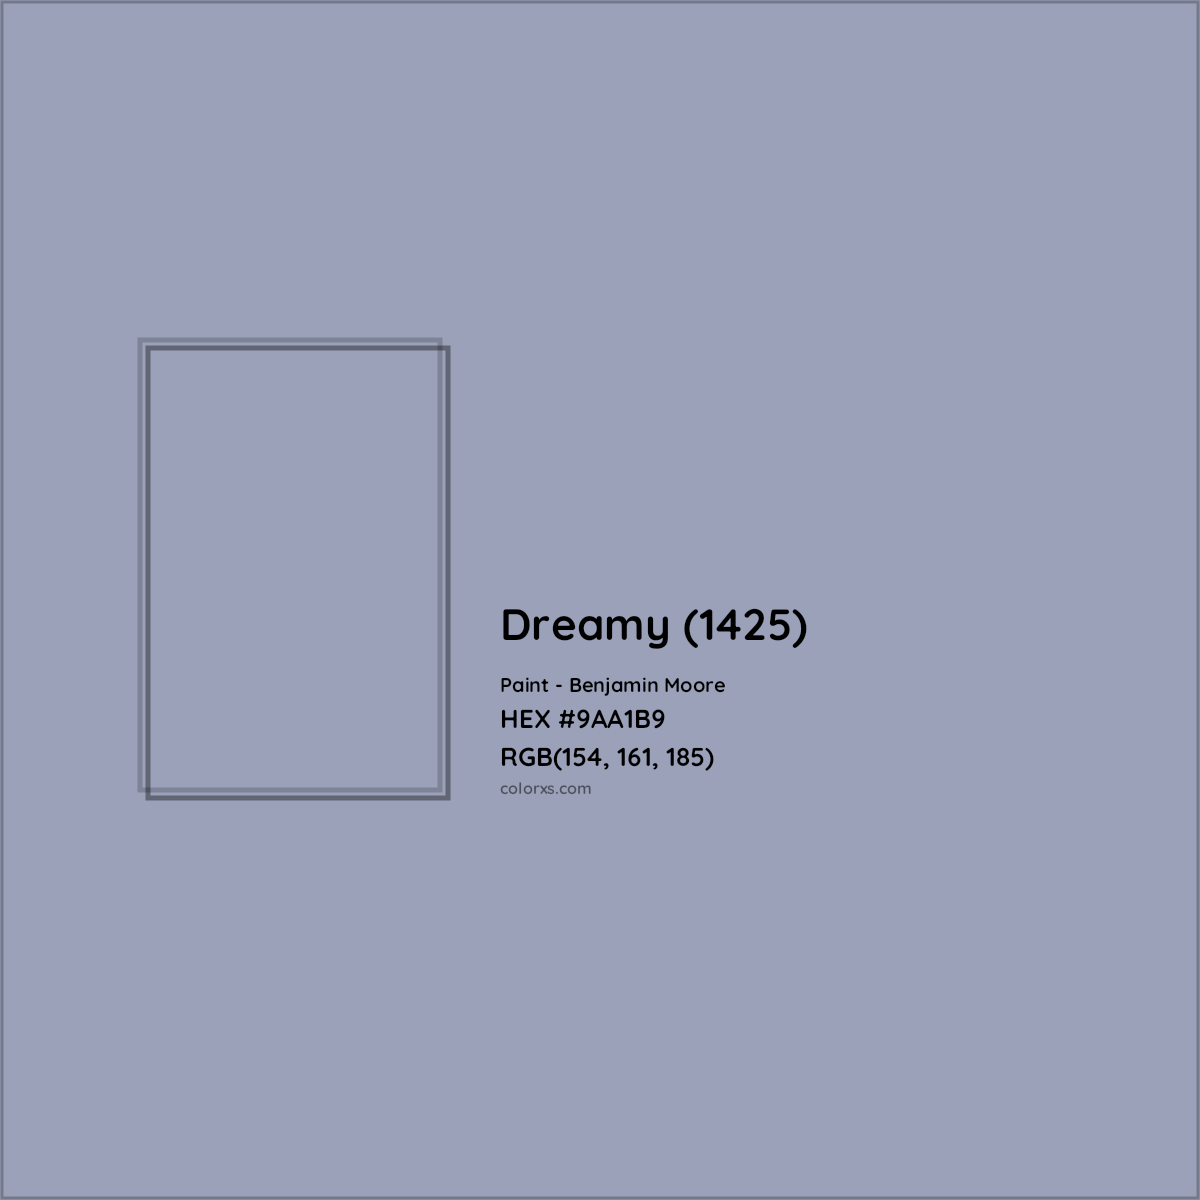 HEX #9AA1B9 Dreamy (1425) Paint Benjamin Moore - Color Code